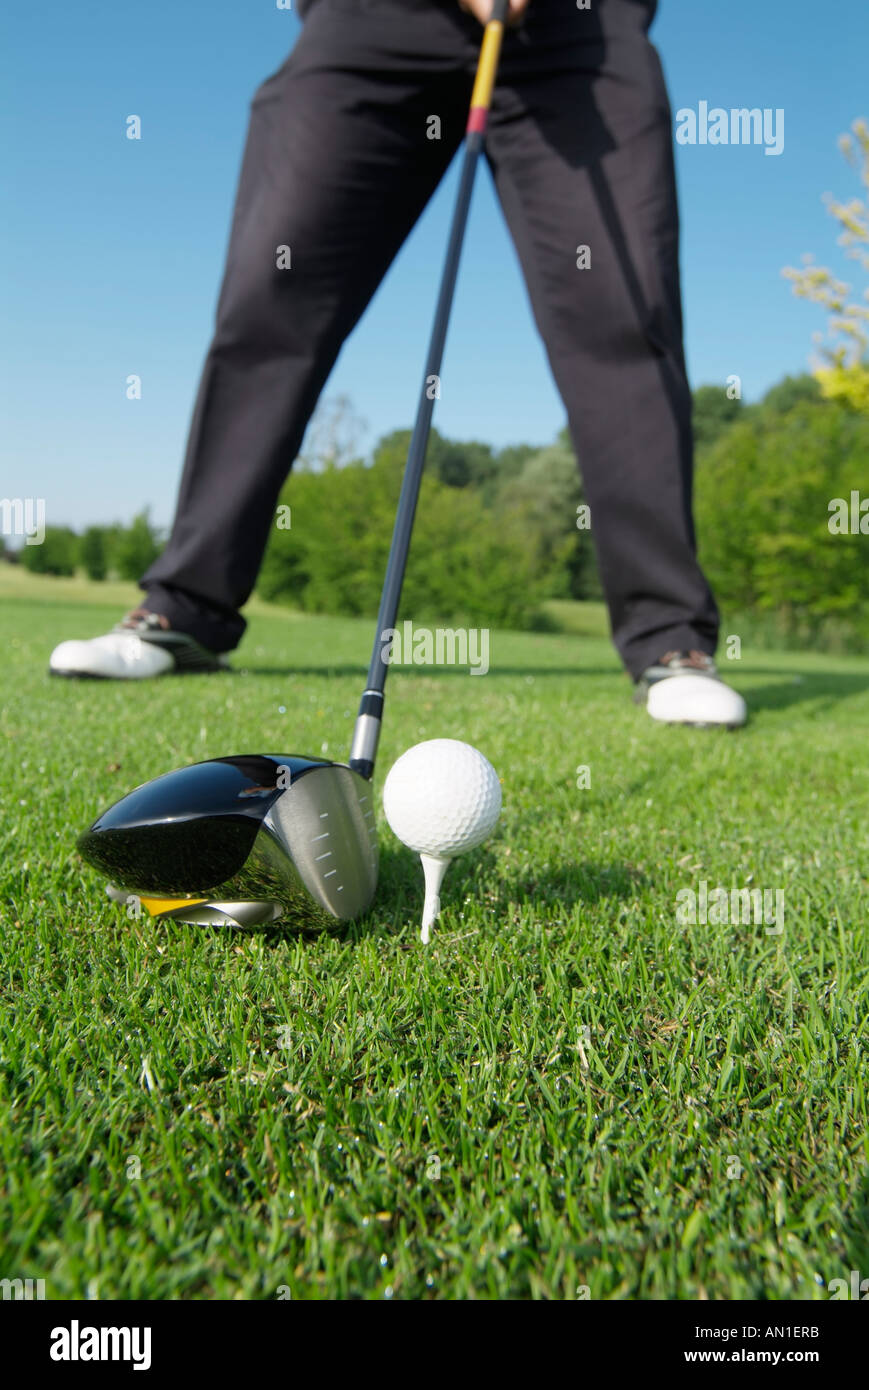 Golf Golf Golf golfeur, détail de frapper une balle de golf sur le terrain de golf Banque D'Images